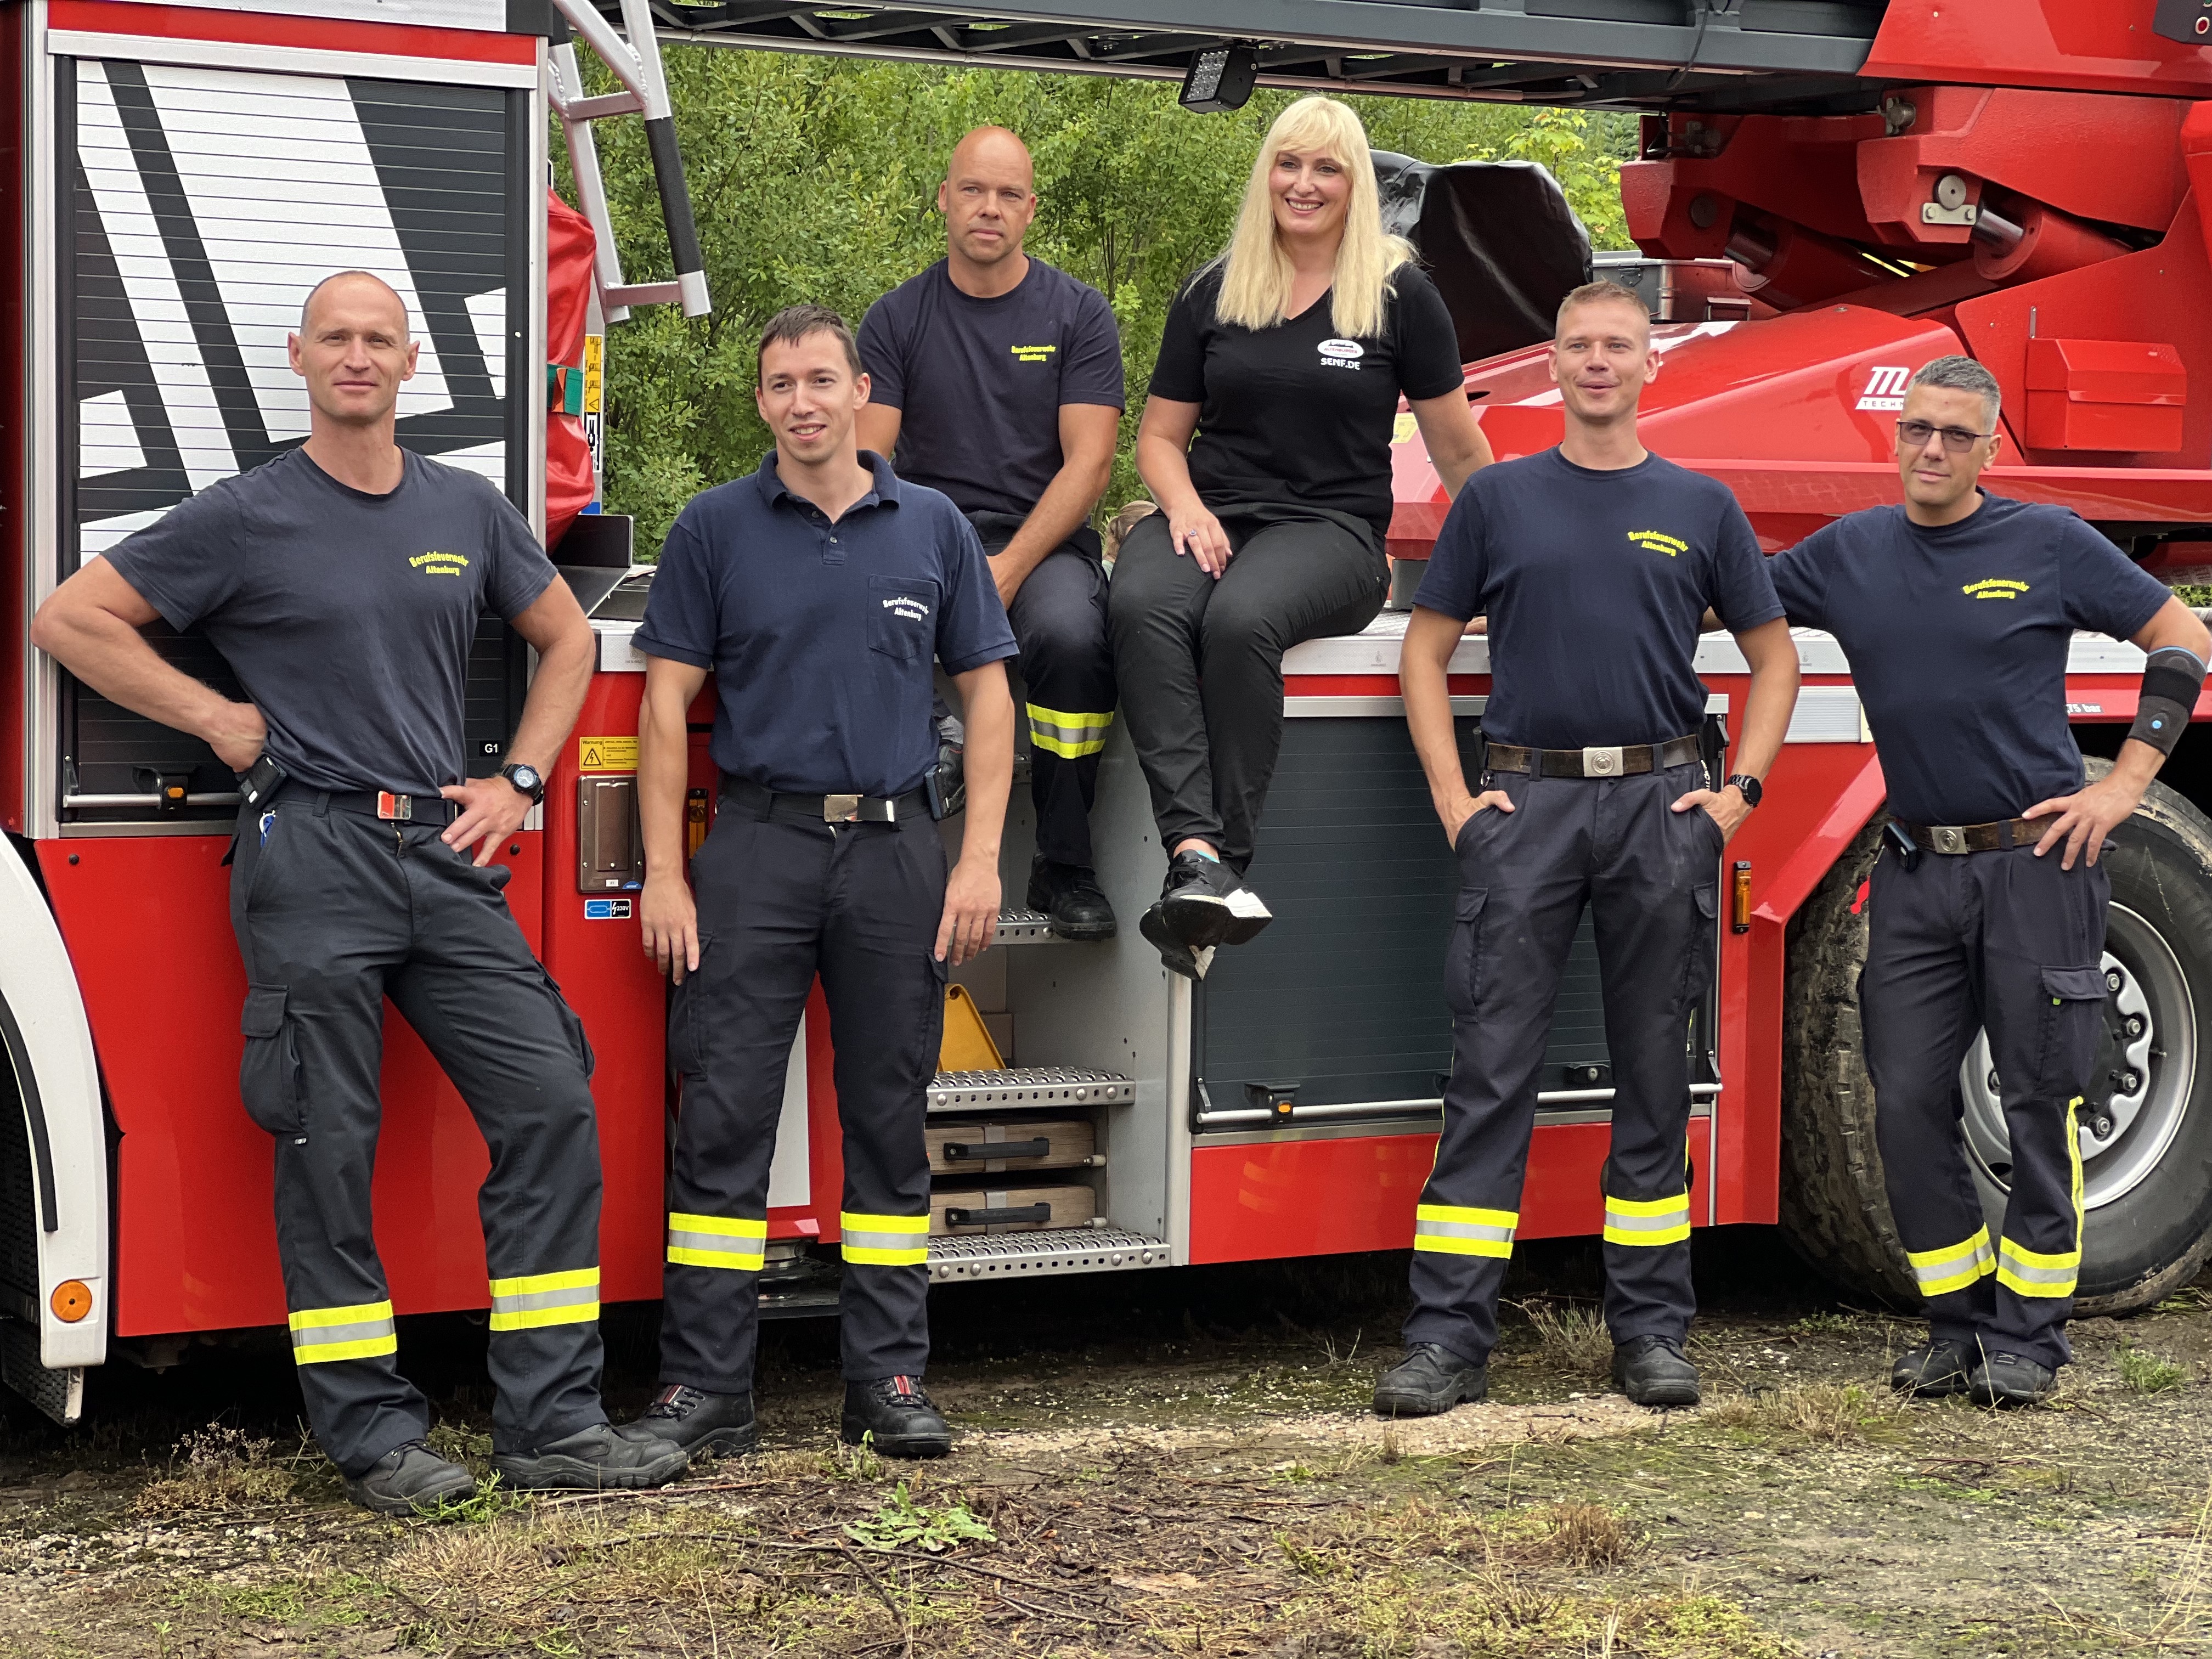 Gruppenfoto: Frau Jungbeck-Ucar inmitten der Feuerwehrmänner